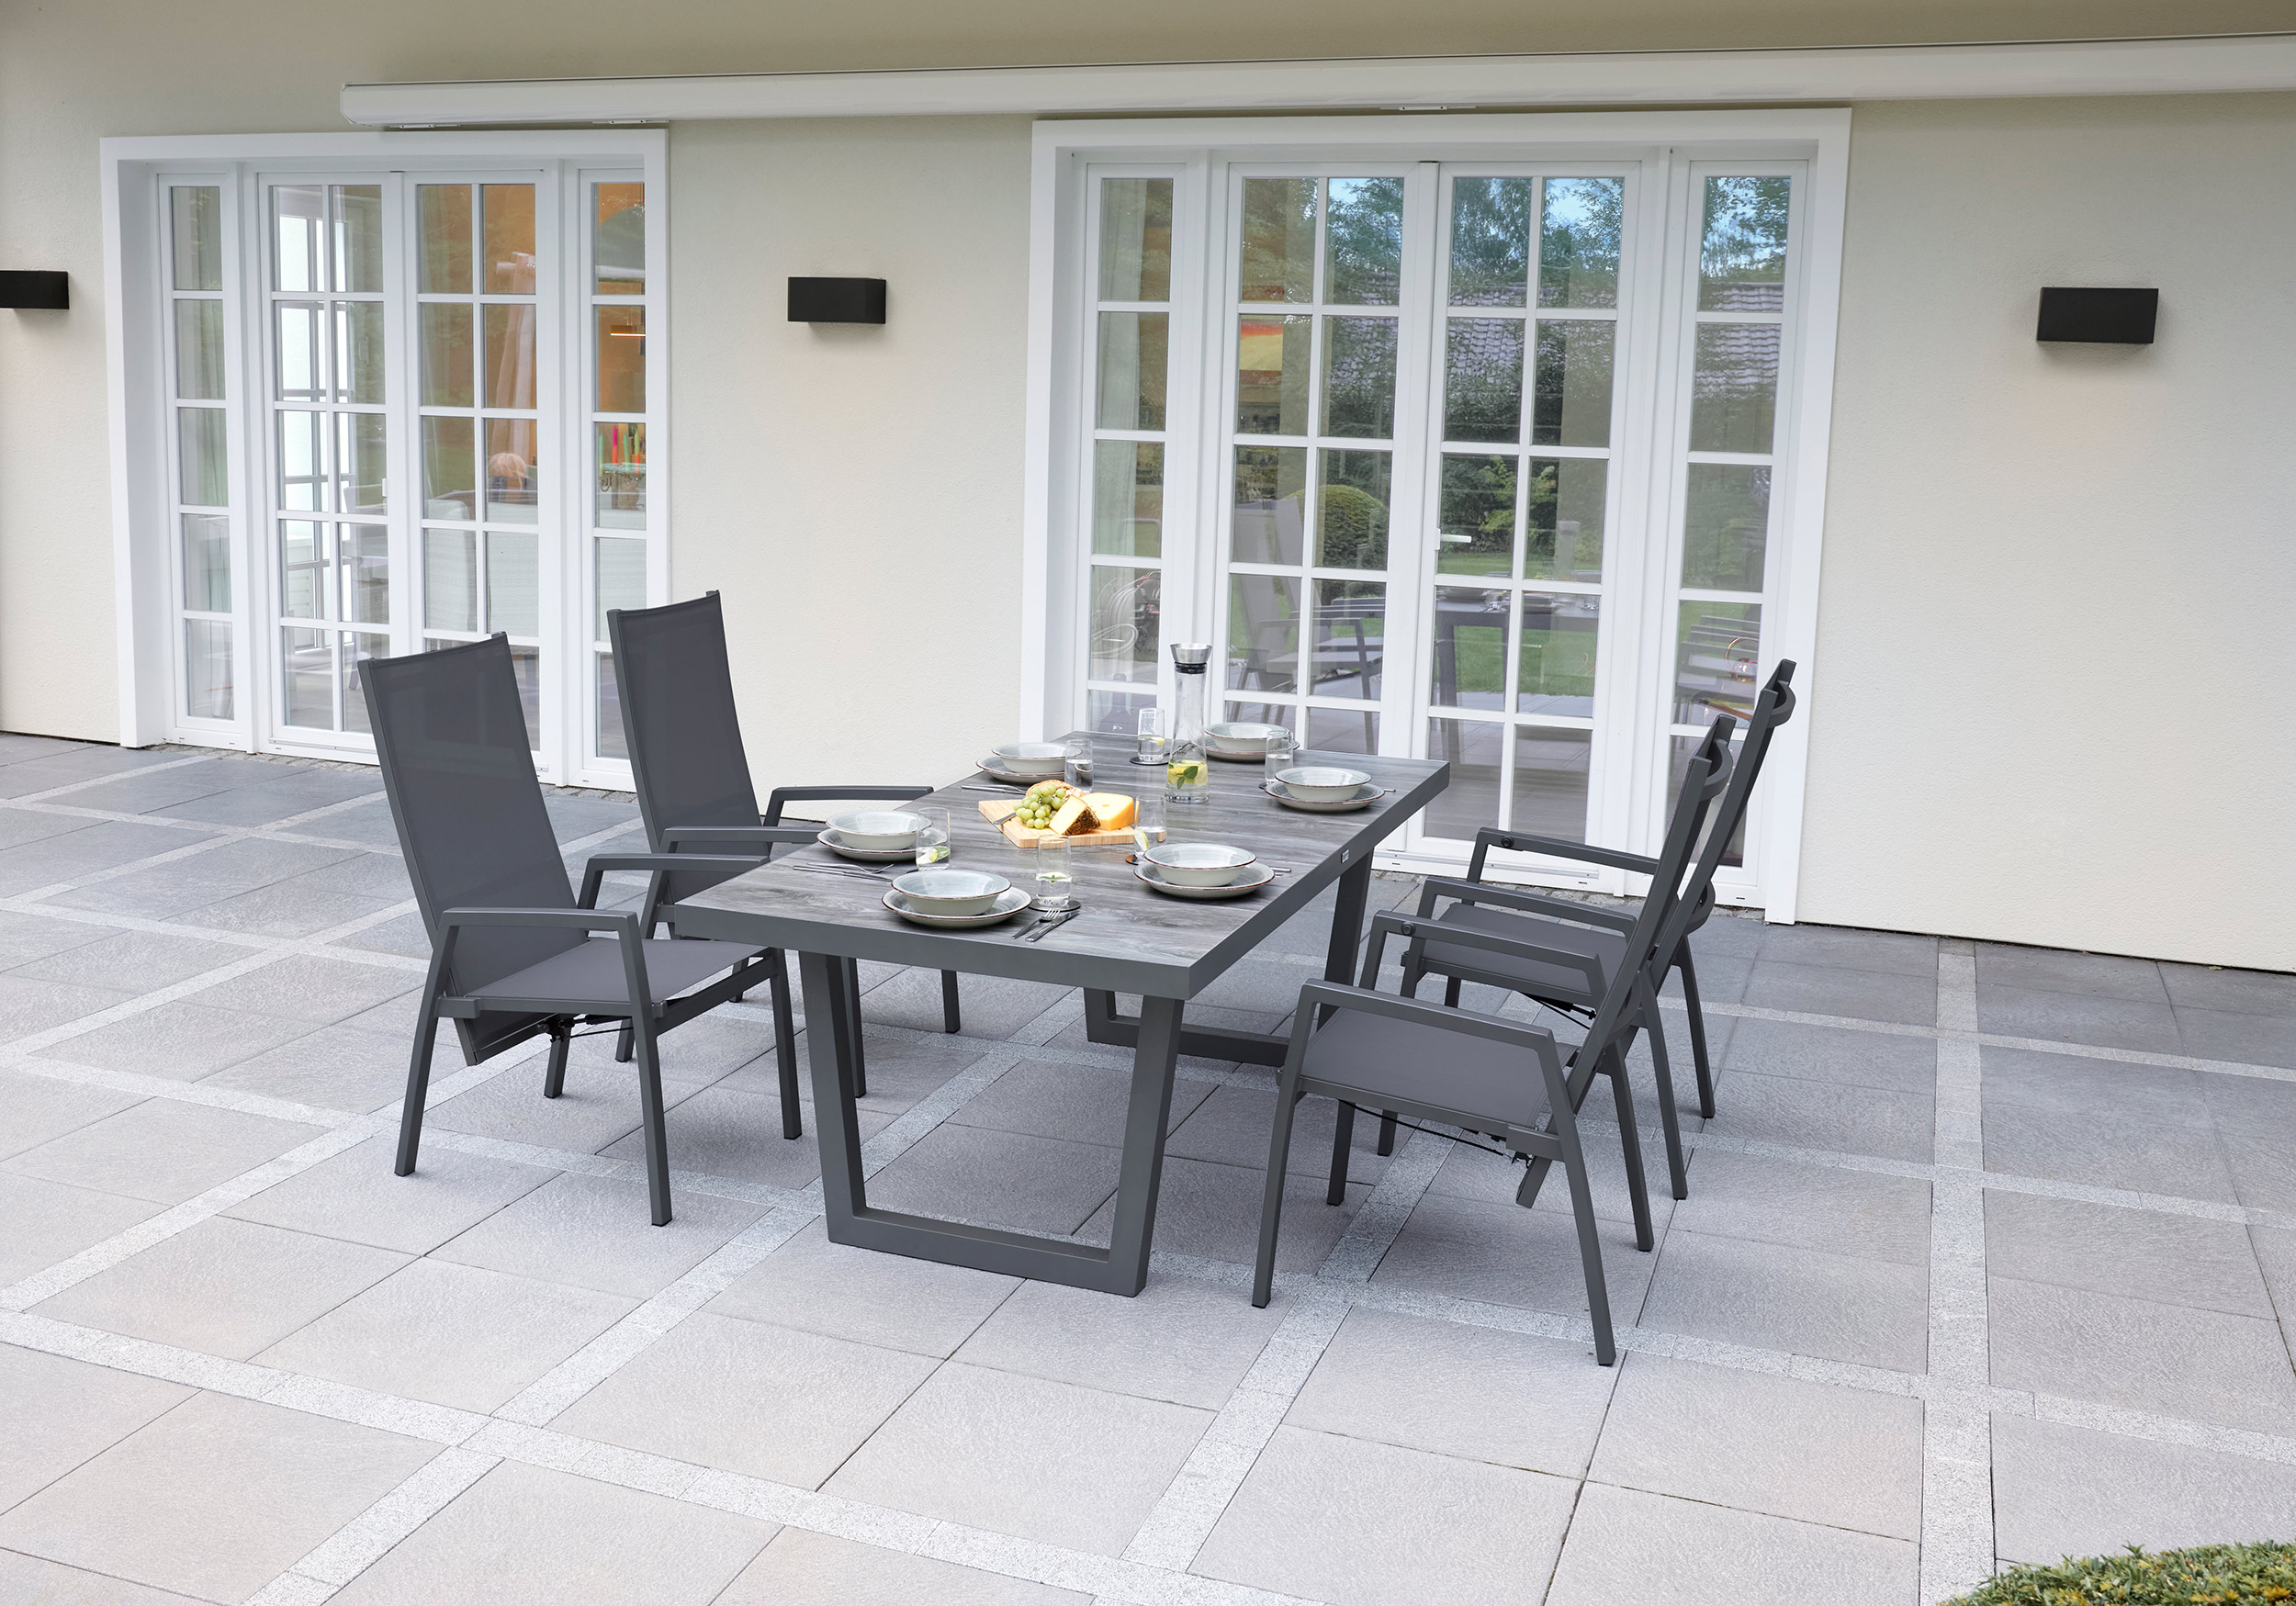 LC Garden »Bondino« Dining 8er Set Positionsstuhl Verstellsessel Textilien grau